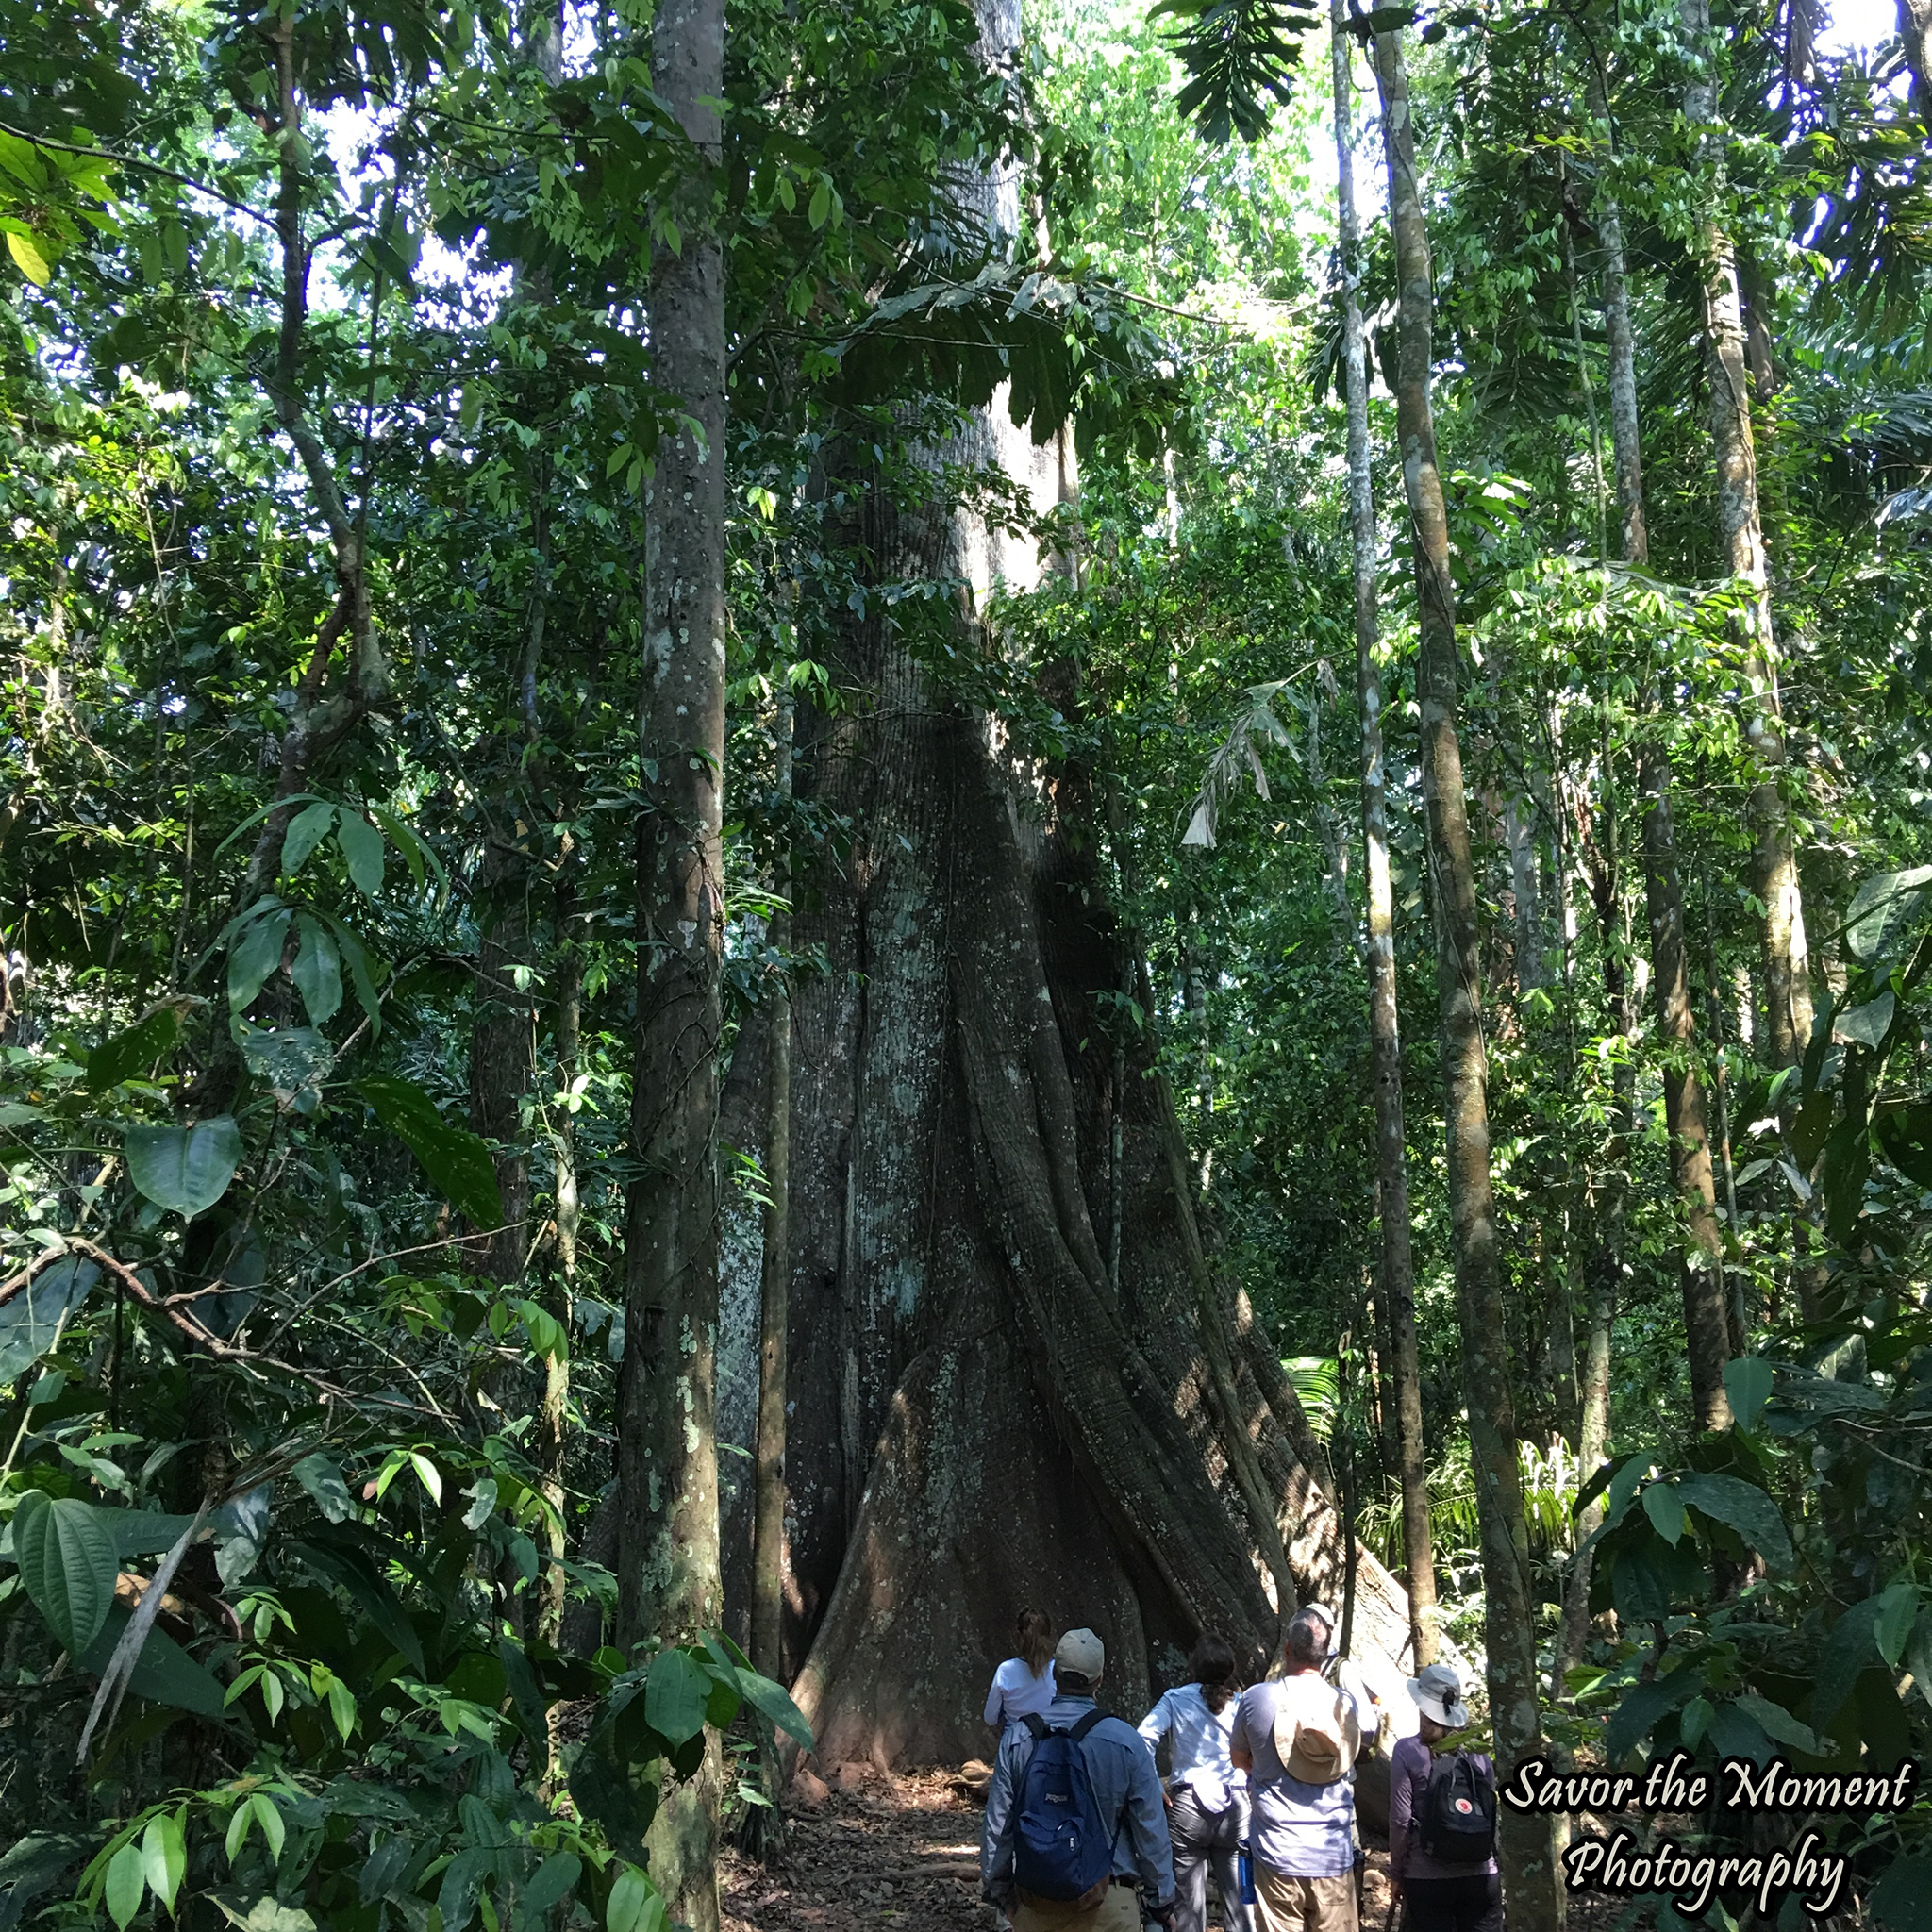 rainforest strangler fig tree